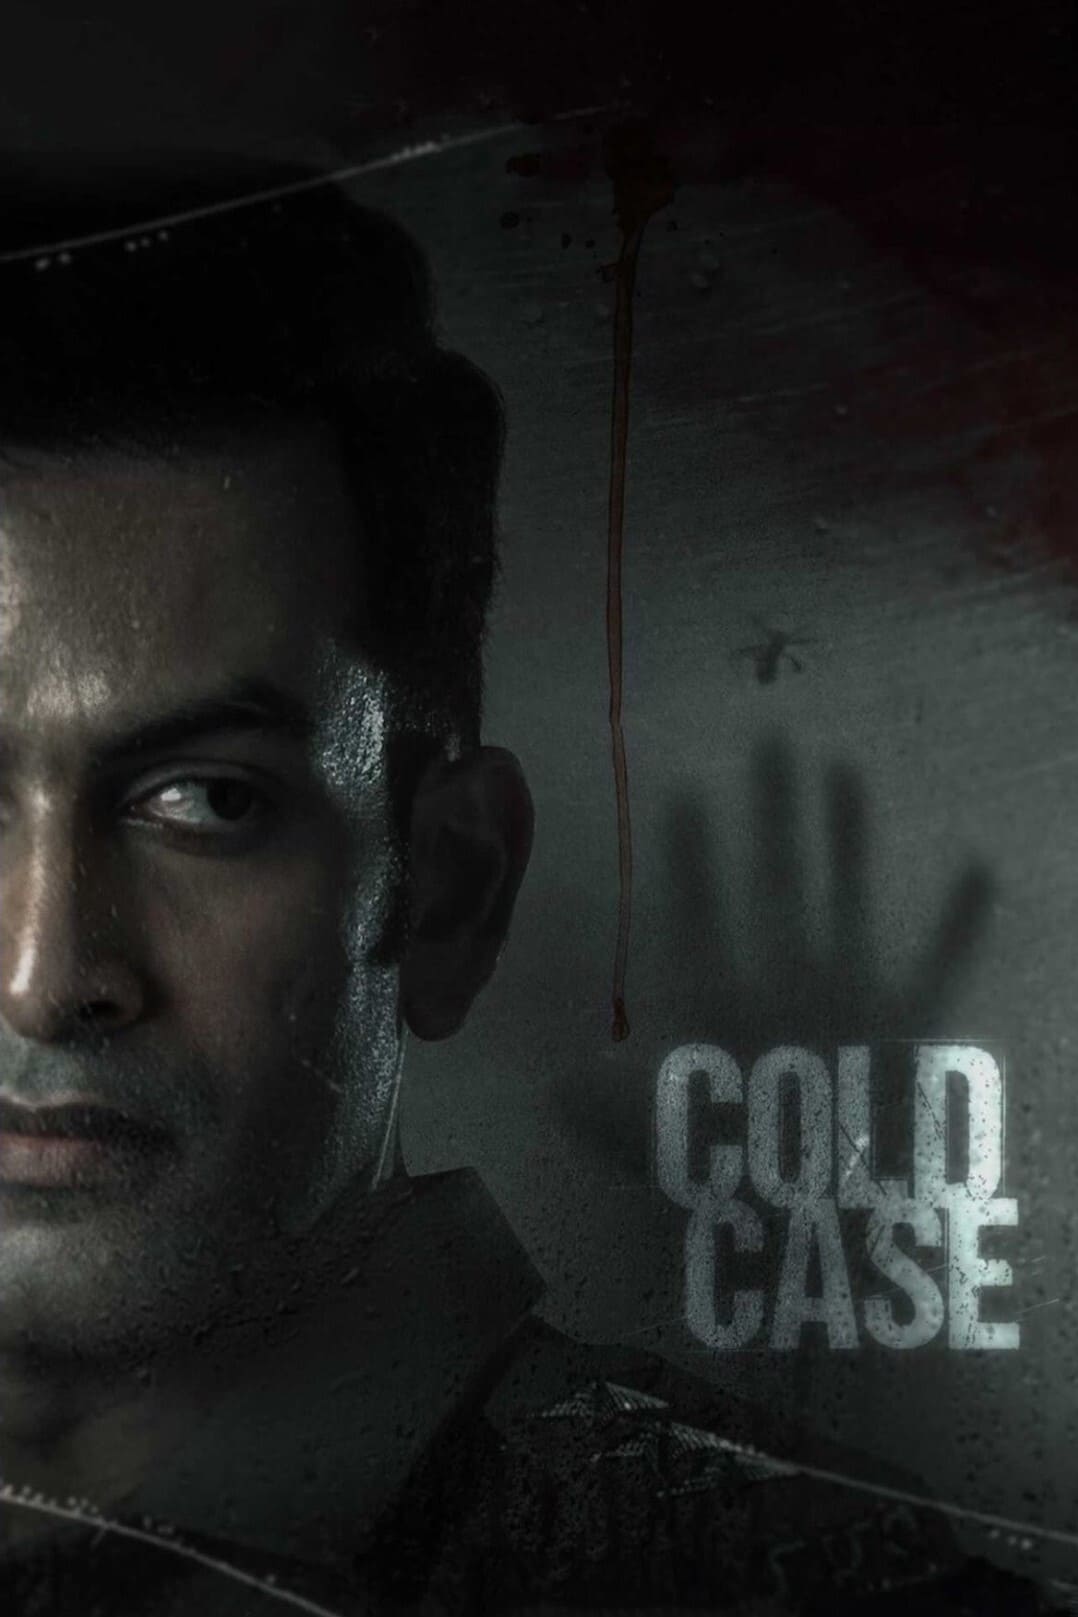 پرونده سرد (Cold Case)